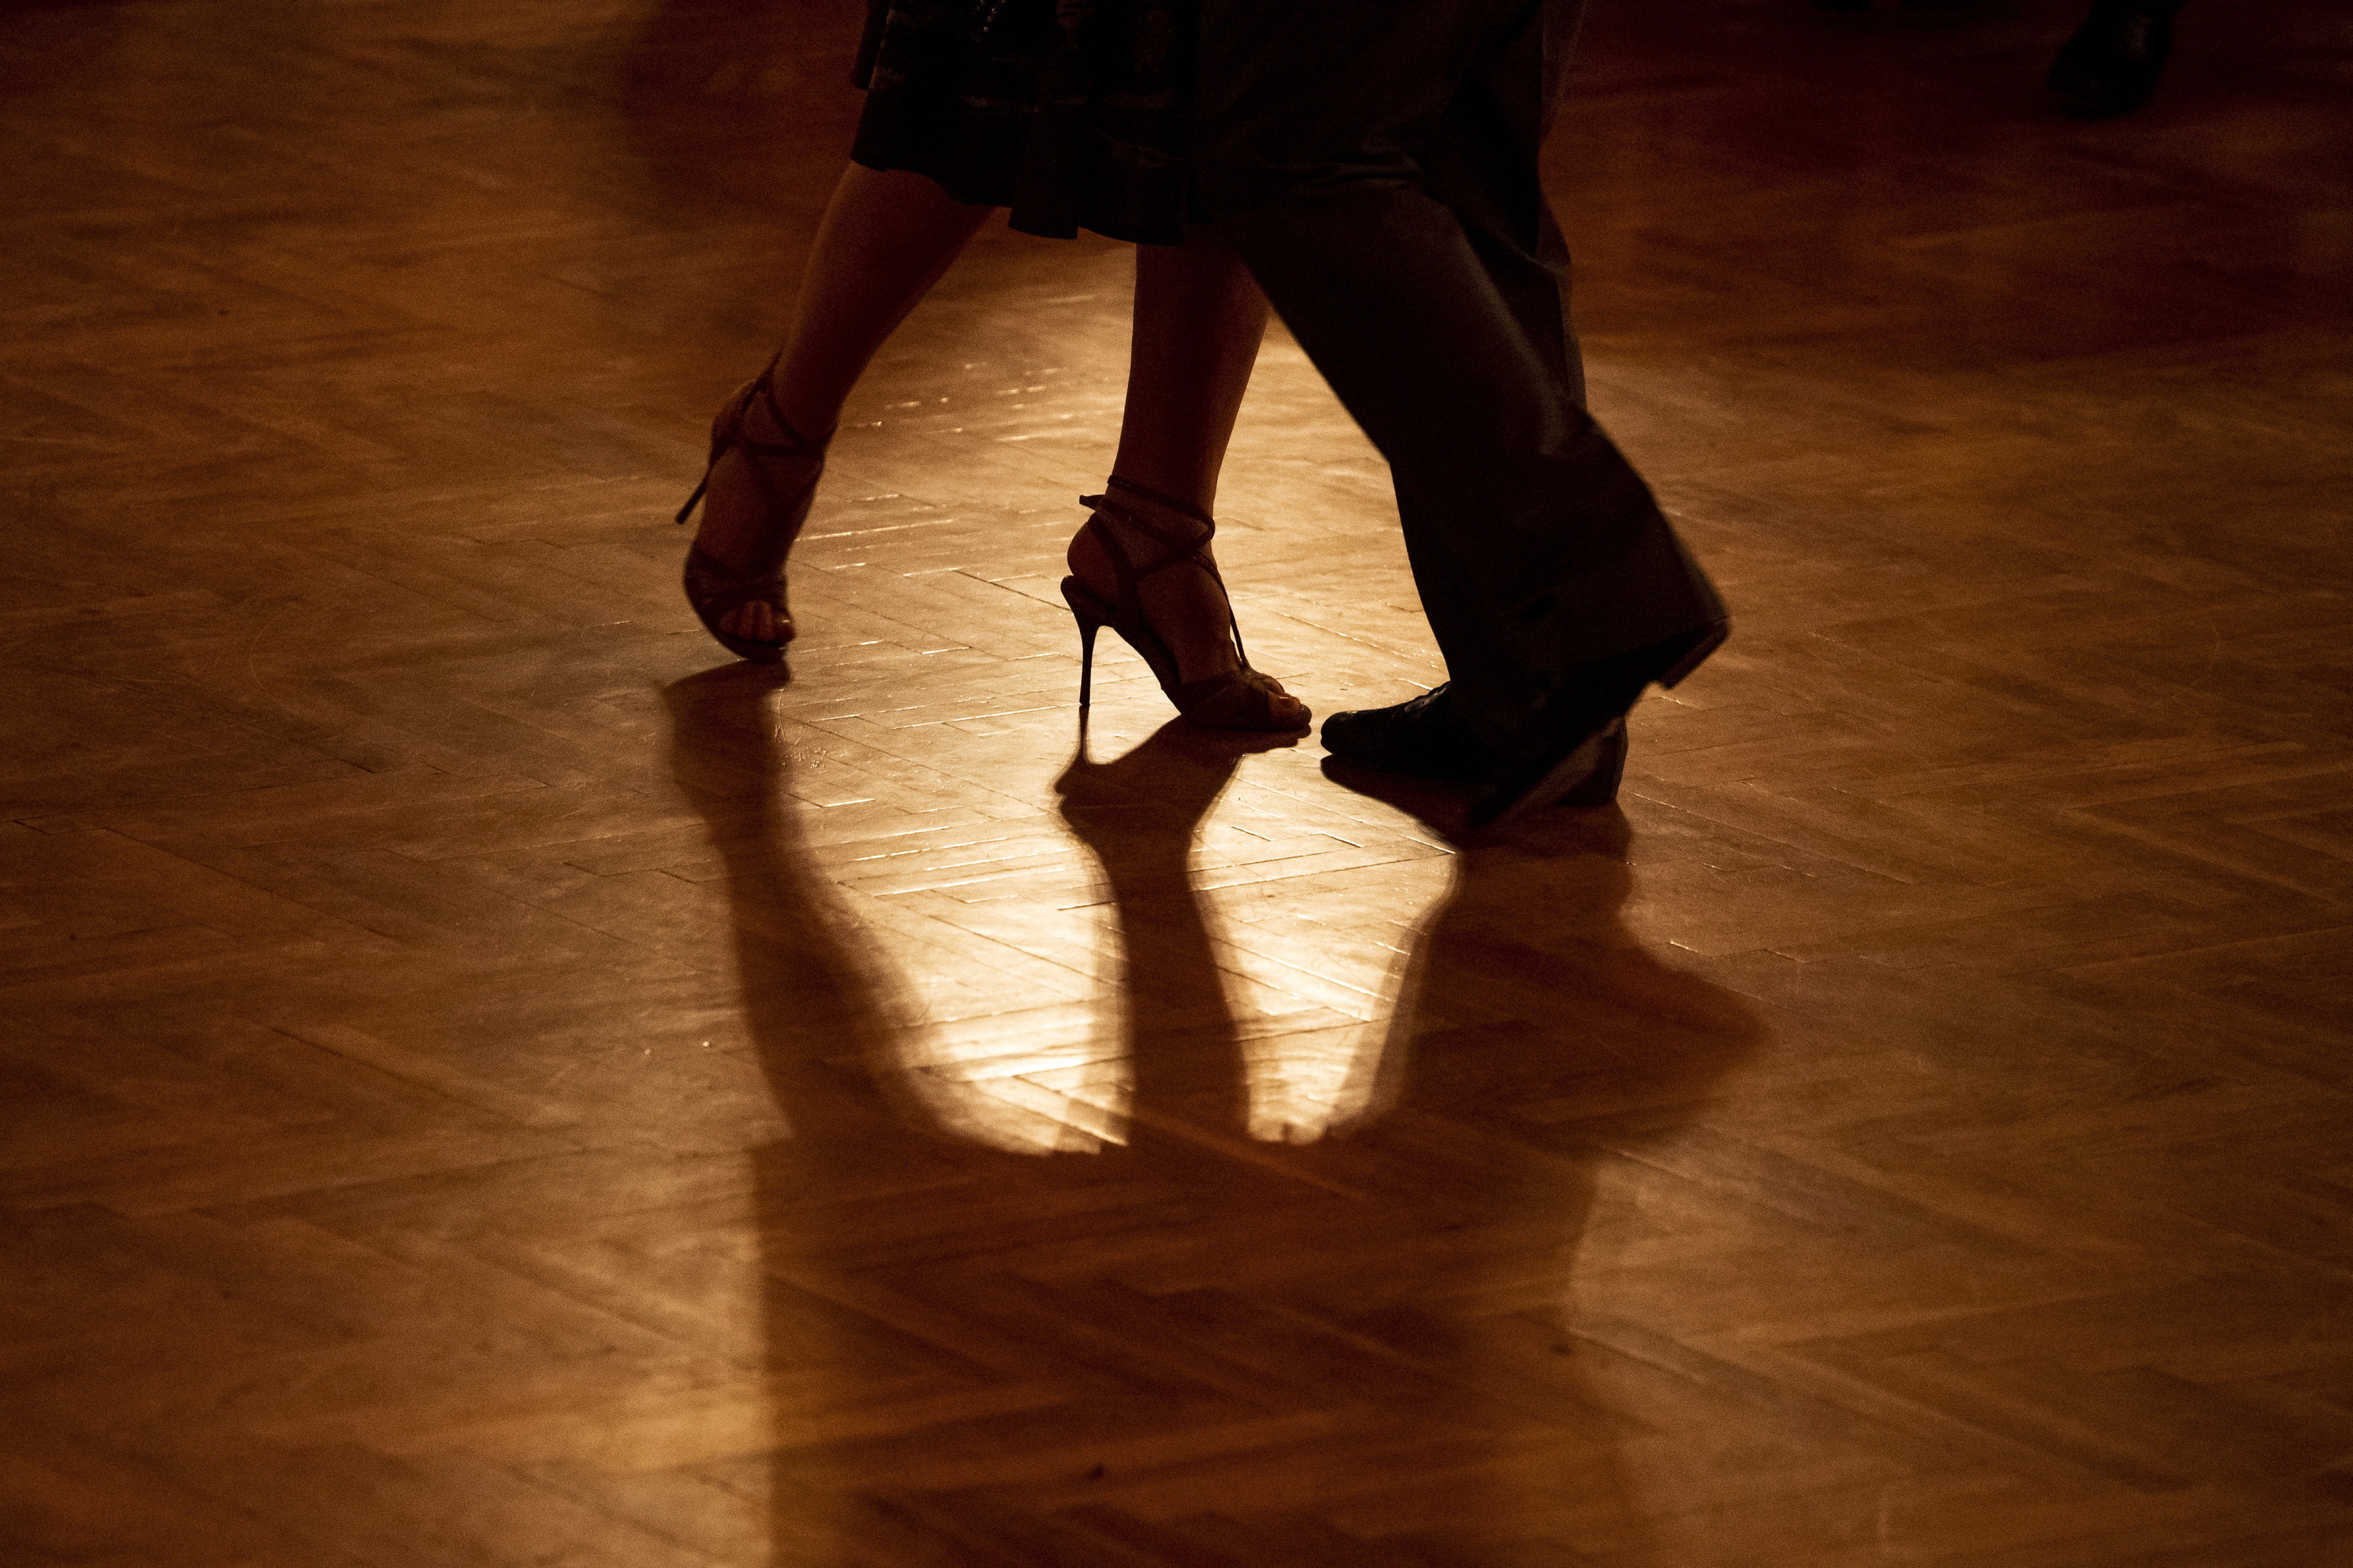 Peidró: “Lo ideal es empezar por algunos movimientos, como caminar, subir la escalera, bailar o trotar" (Imagen de archivo. EFE/EPA/Marton Monus) 